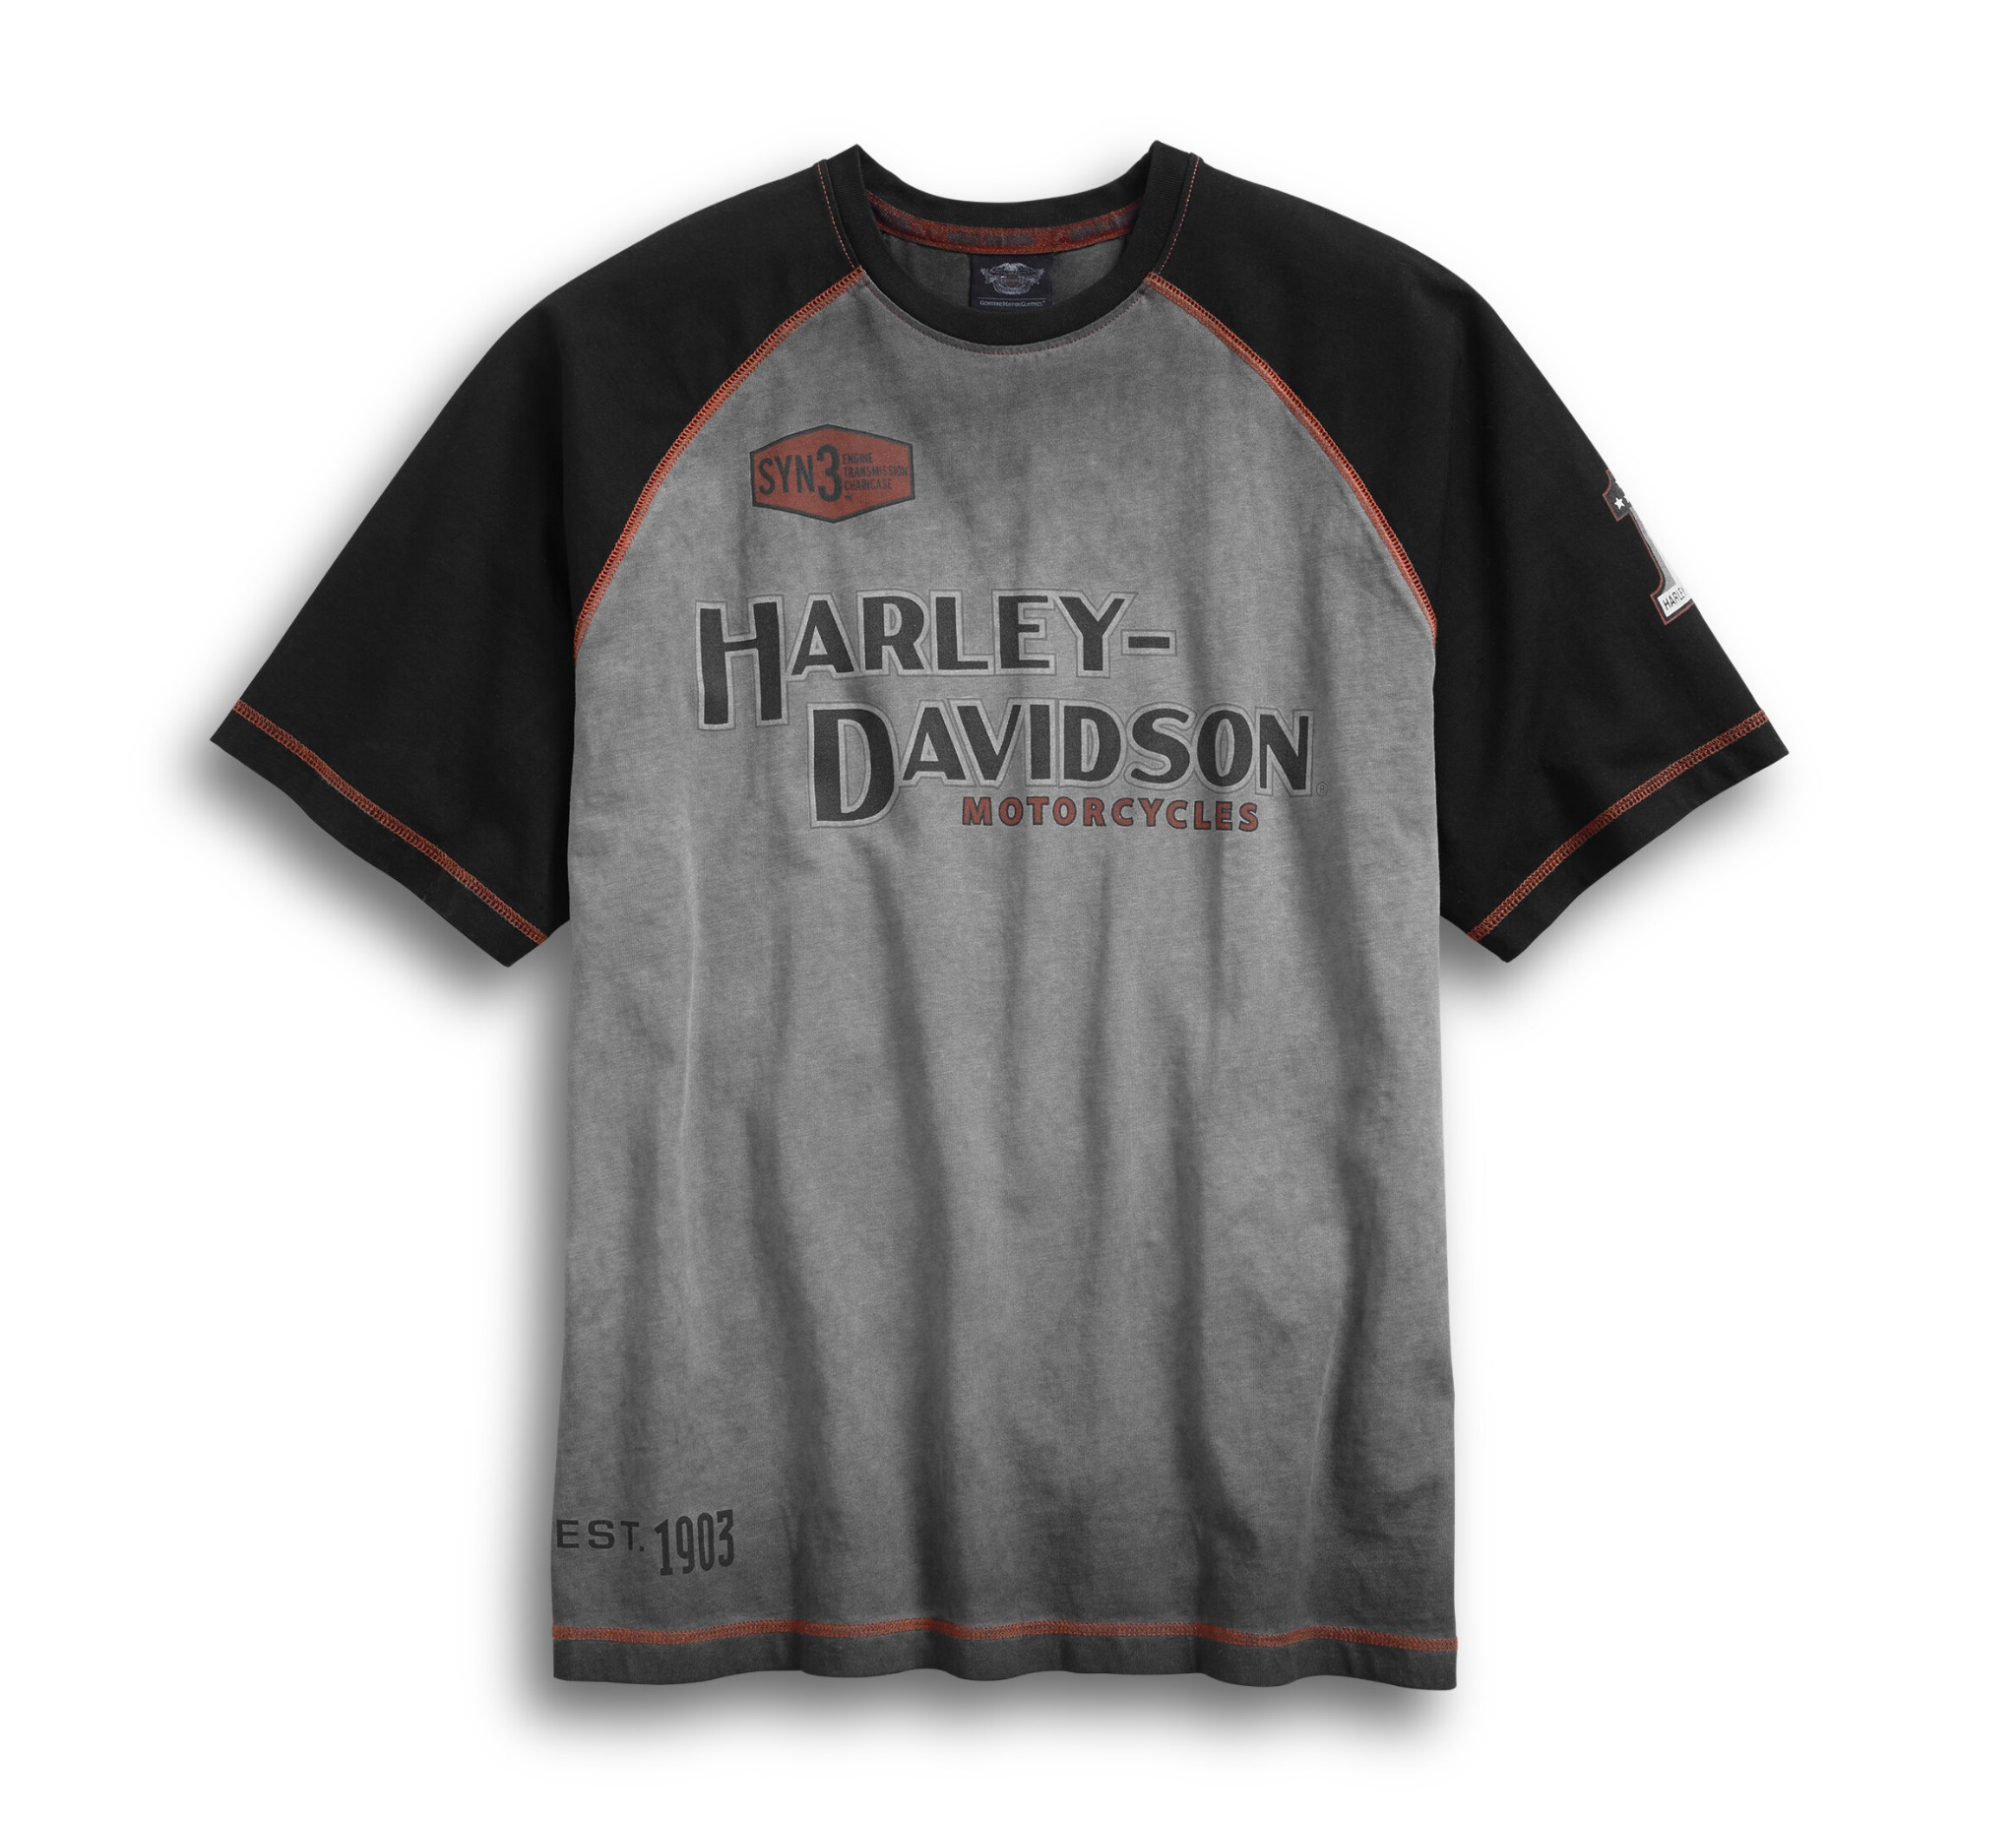 H-D Harley Davidson T-shirt